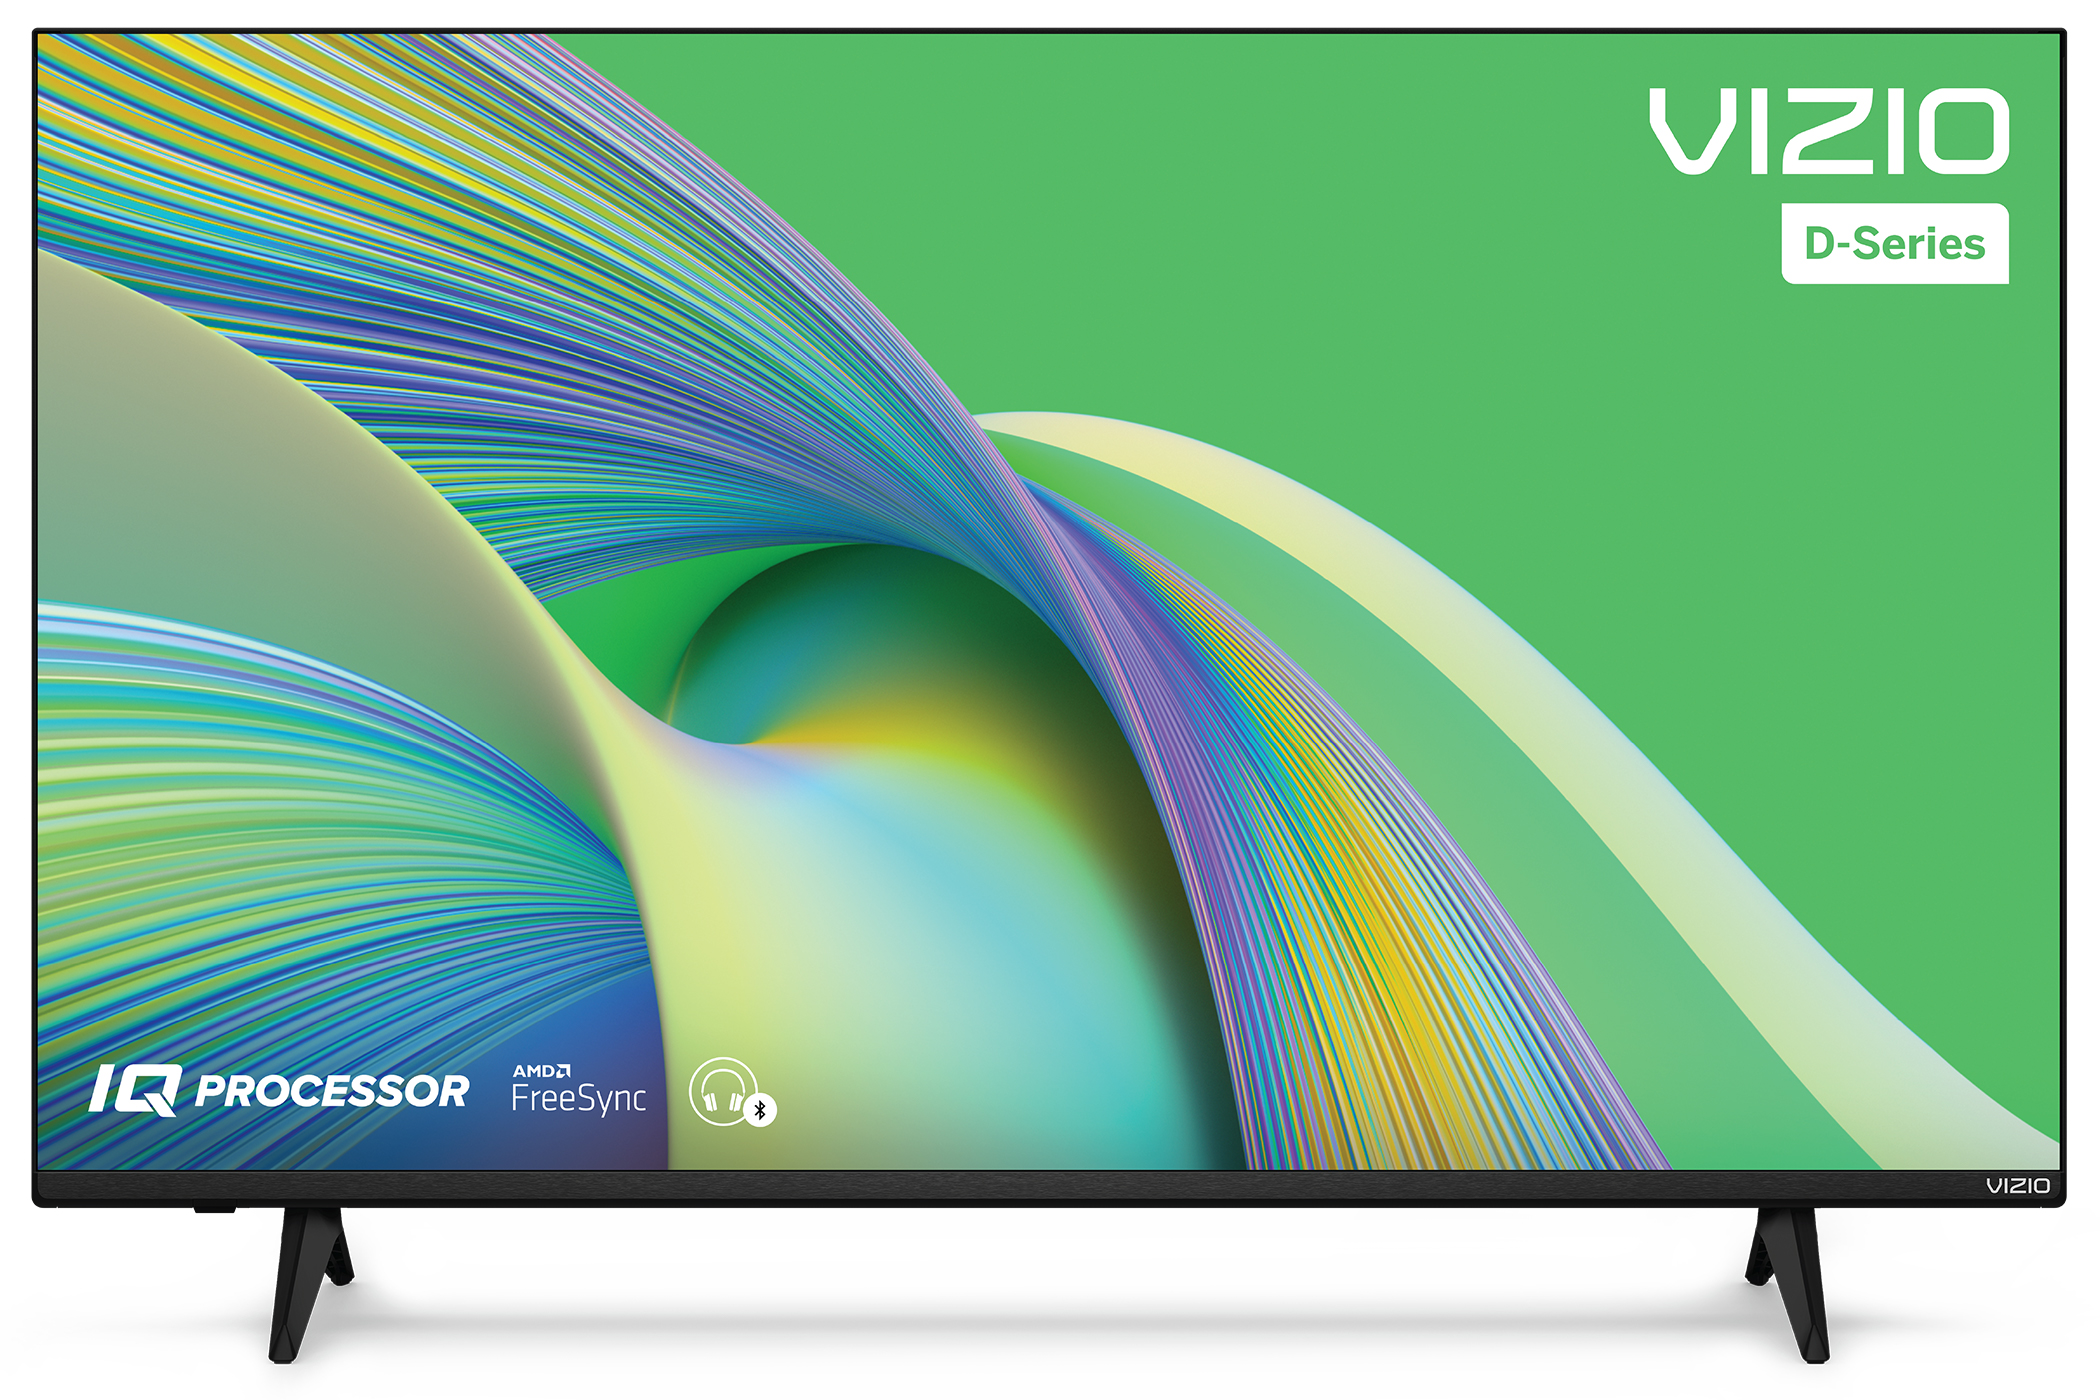 विज़िओ डी-सीरीज़ टीवी एक सफेद पृष्ठभूमि पर एक मार्केटिंग स्क्रीन प्रदर्शित कर रहा है।